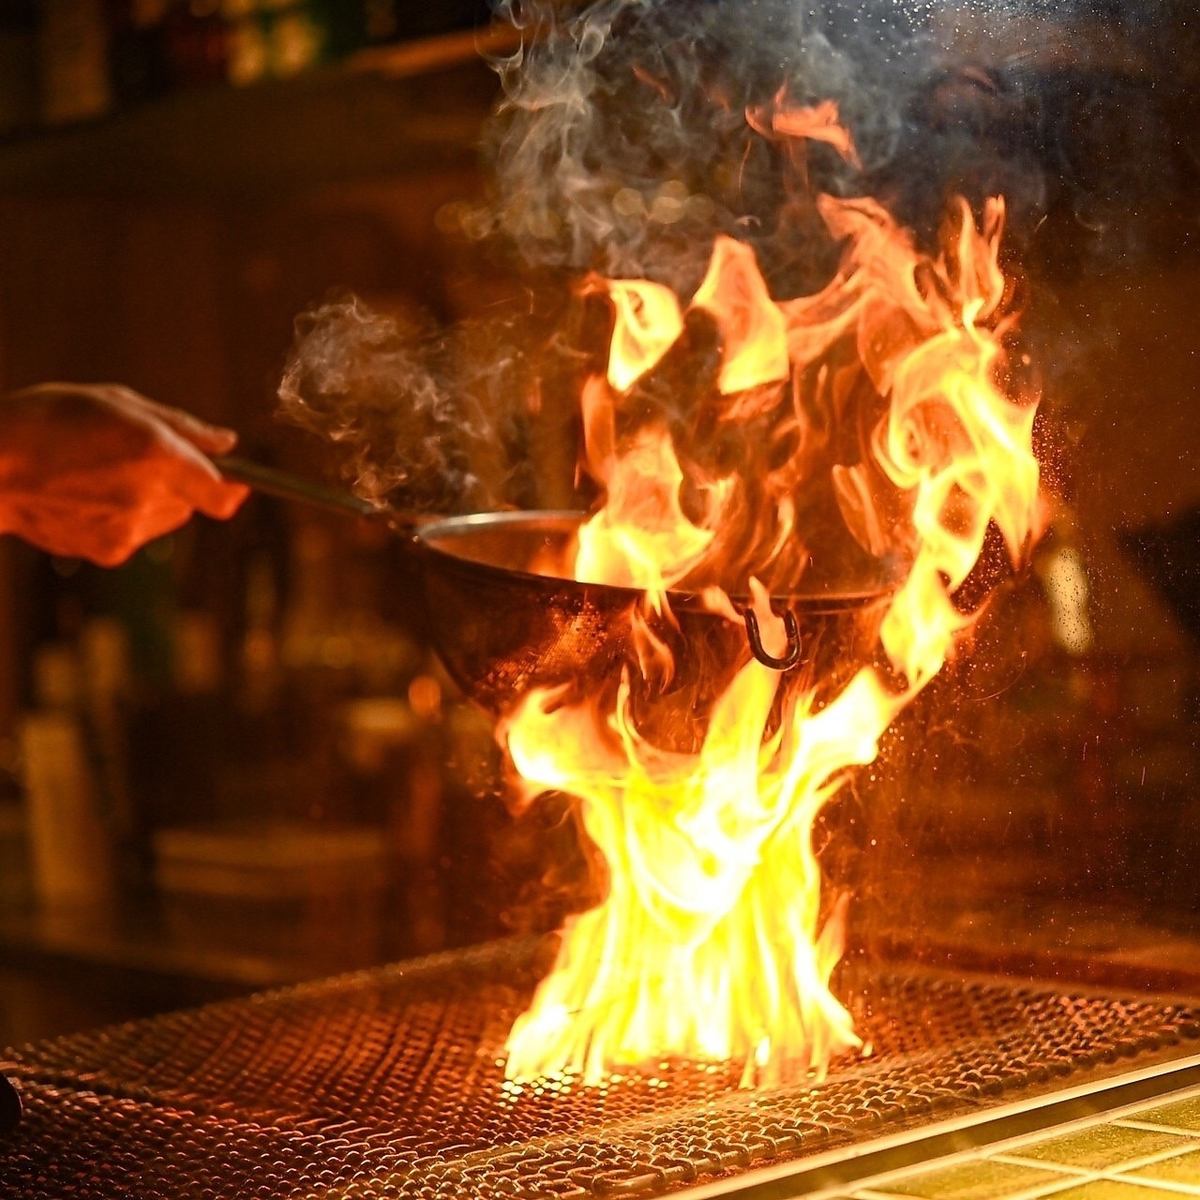 お洒落な店内で本格的な炉端焼きとオリーブオイルで揚げた天ぷらが堪能できる♪